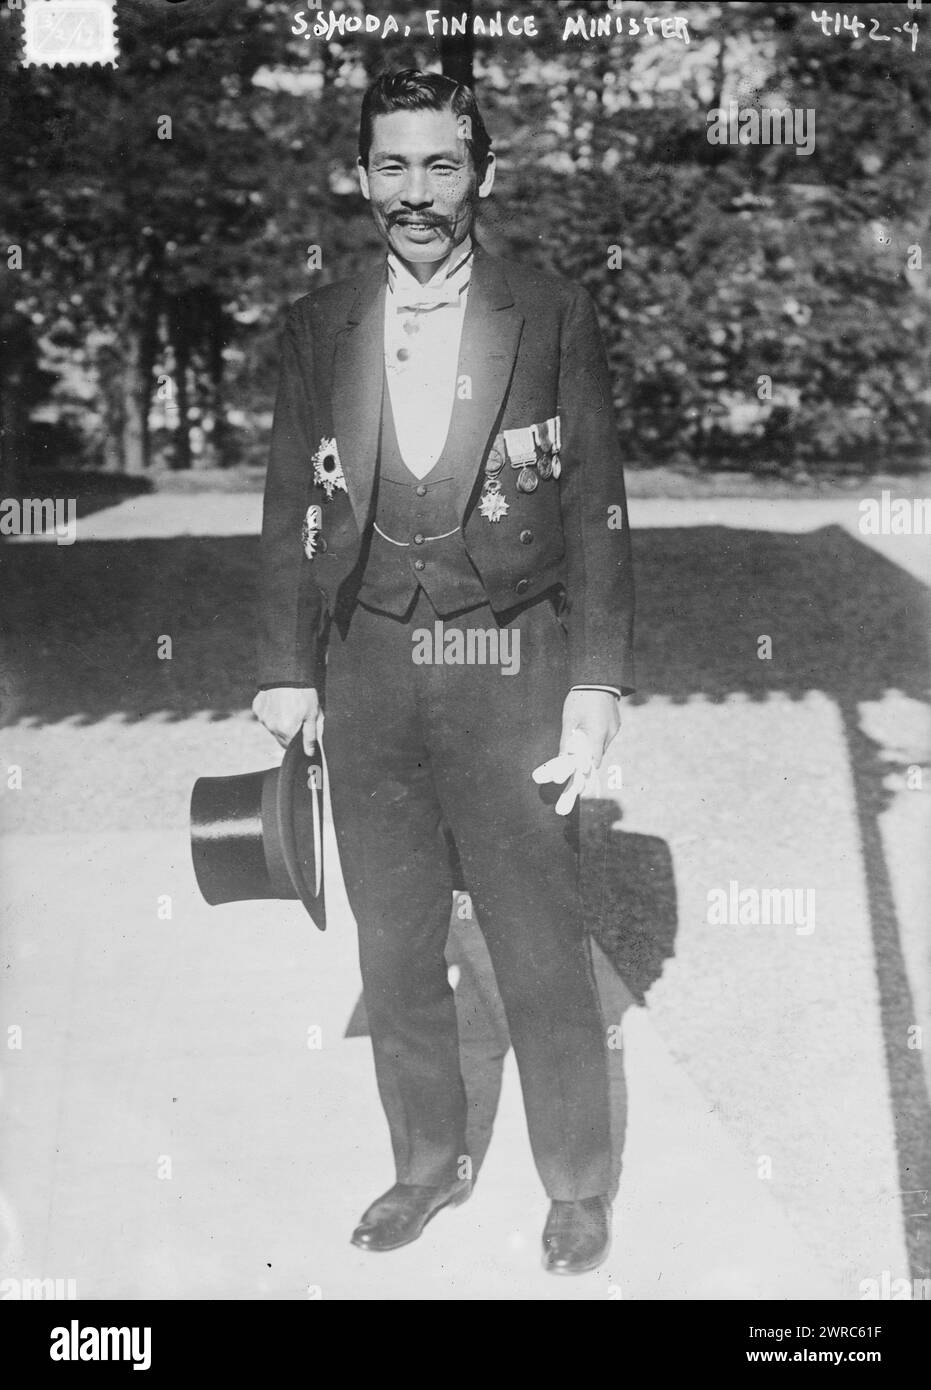 S. Shoda, Ministro delle Finanze, fotografia mostra lo statista giapponese Kazue Shoda (1869-1948) che ha servito come ministro delle Finanze., 1917 marzo 2, Glass negative, 1 negative: Vetro Foto Stock